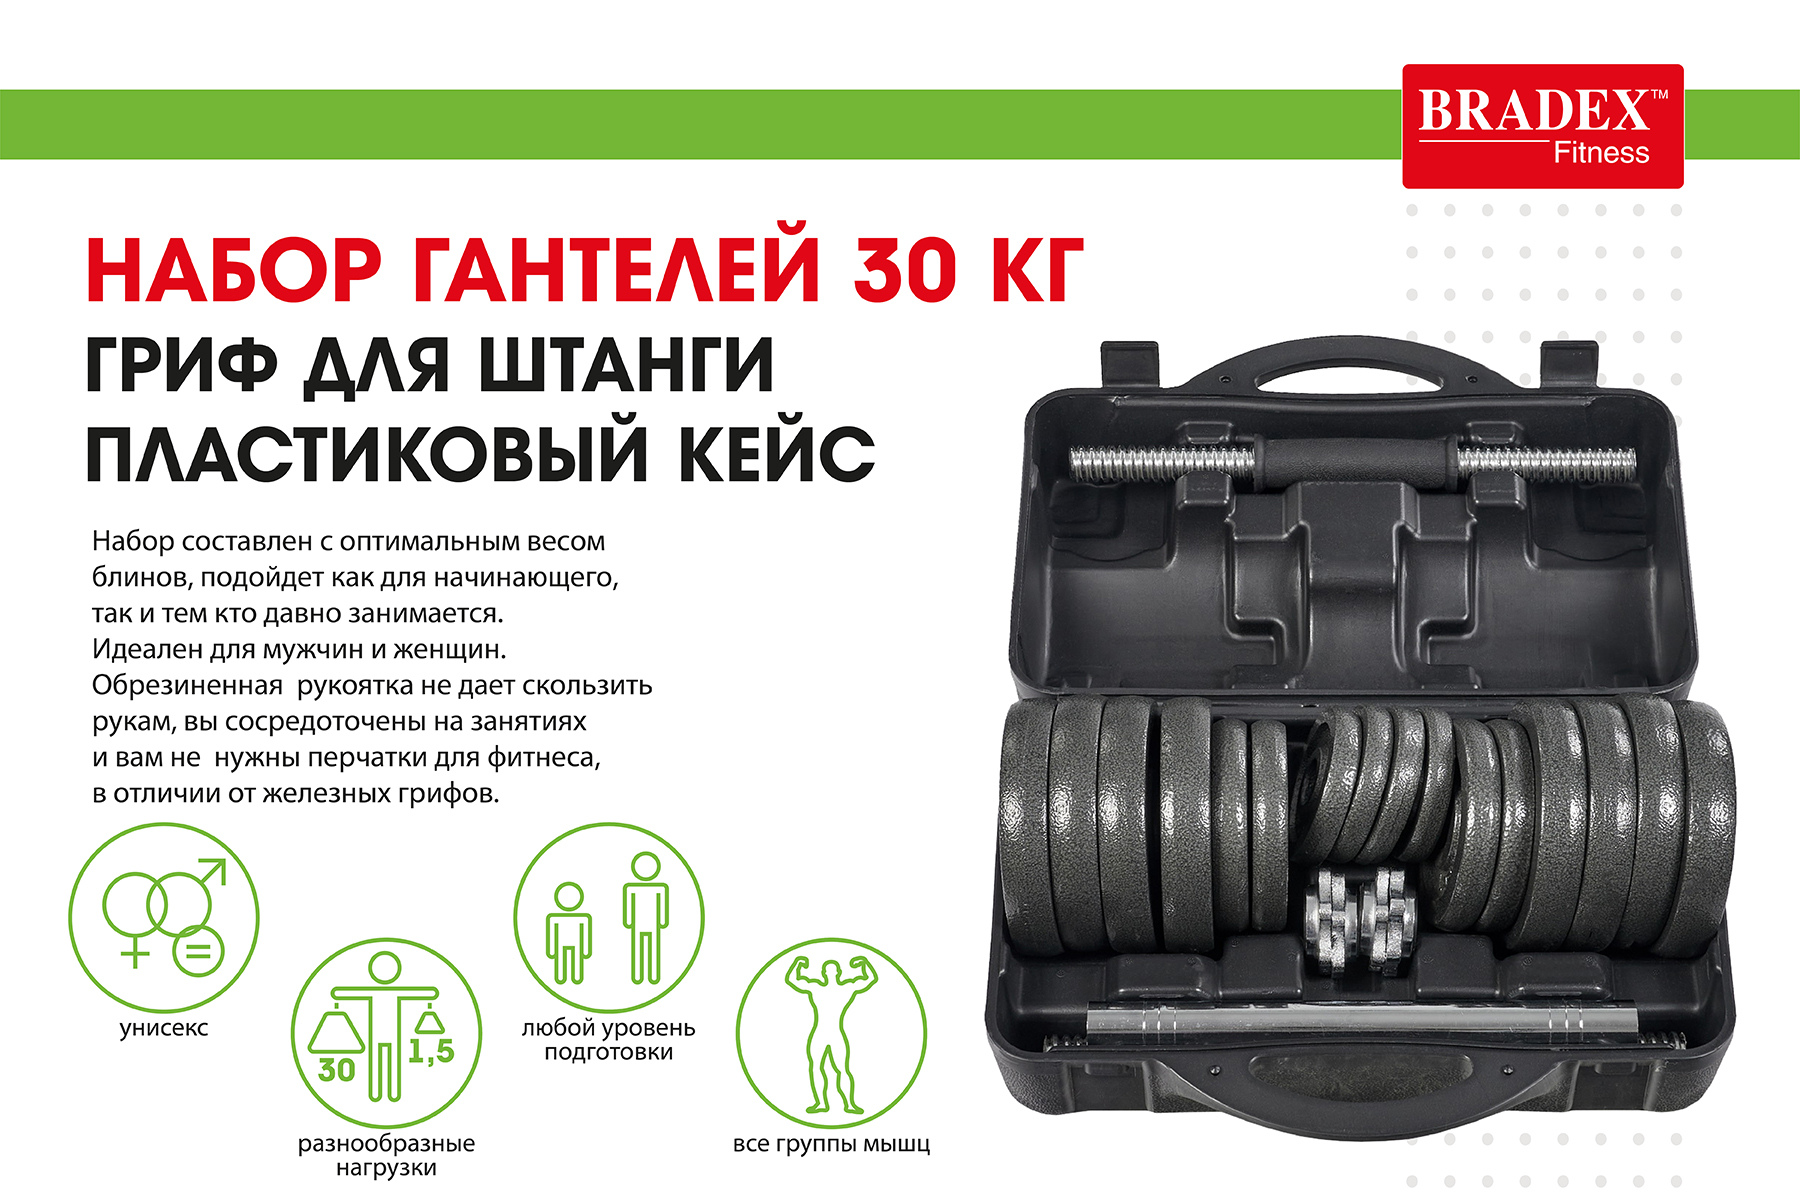 Набор гантелей + гриф для штанги 30 кг, пластиковый кейс Bradex SF 0558 1800_1200